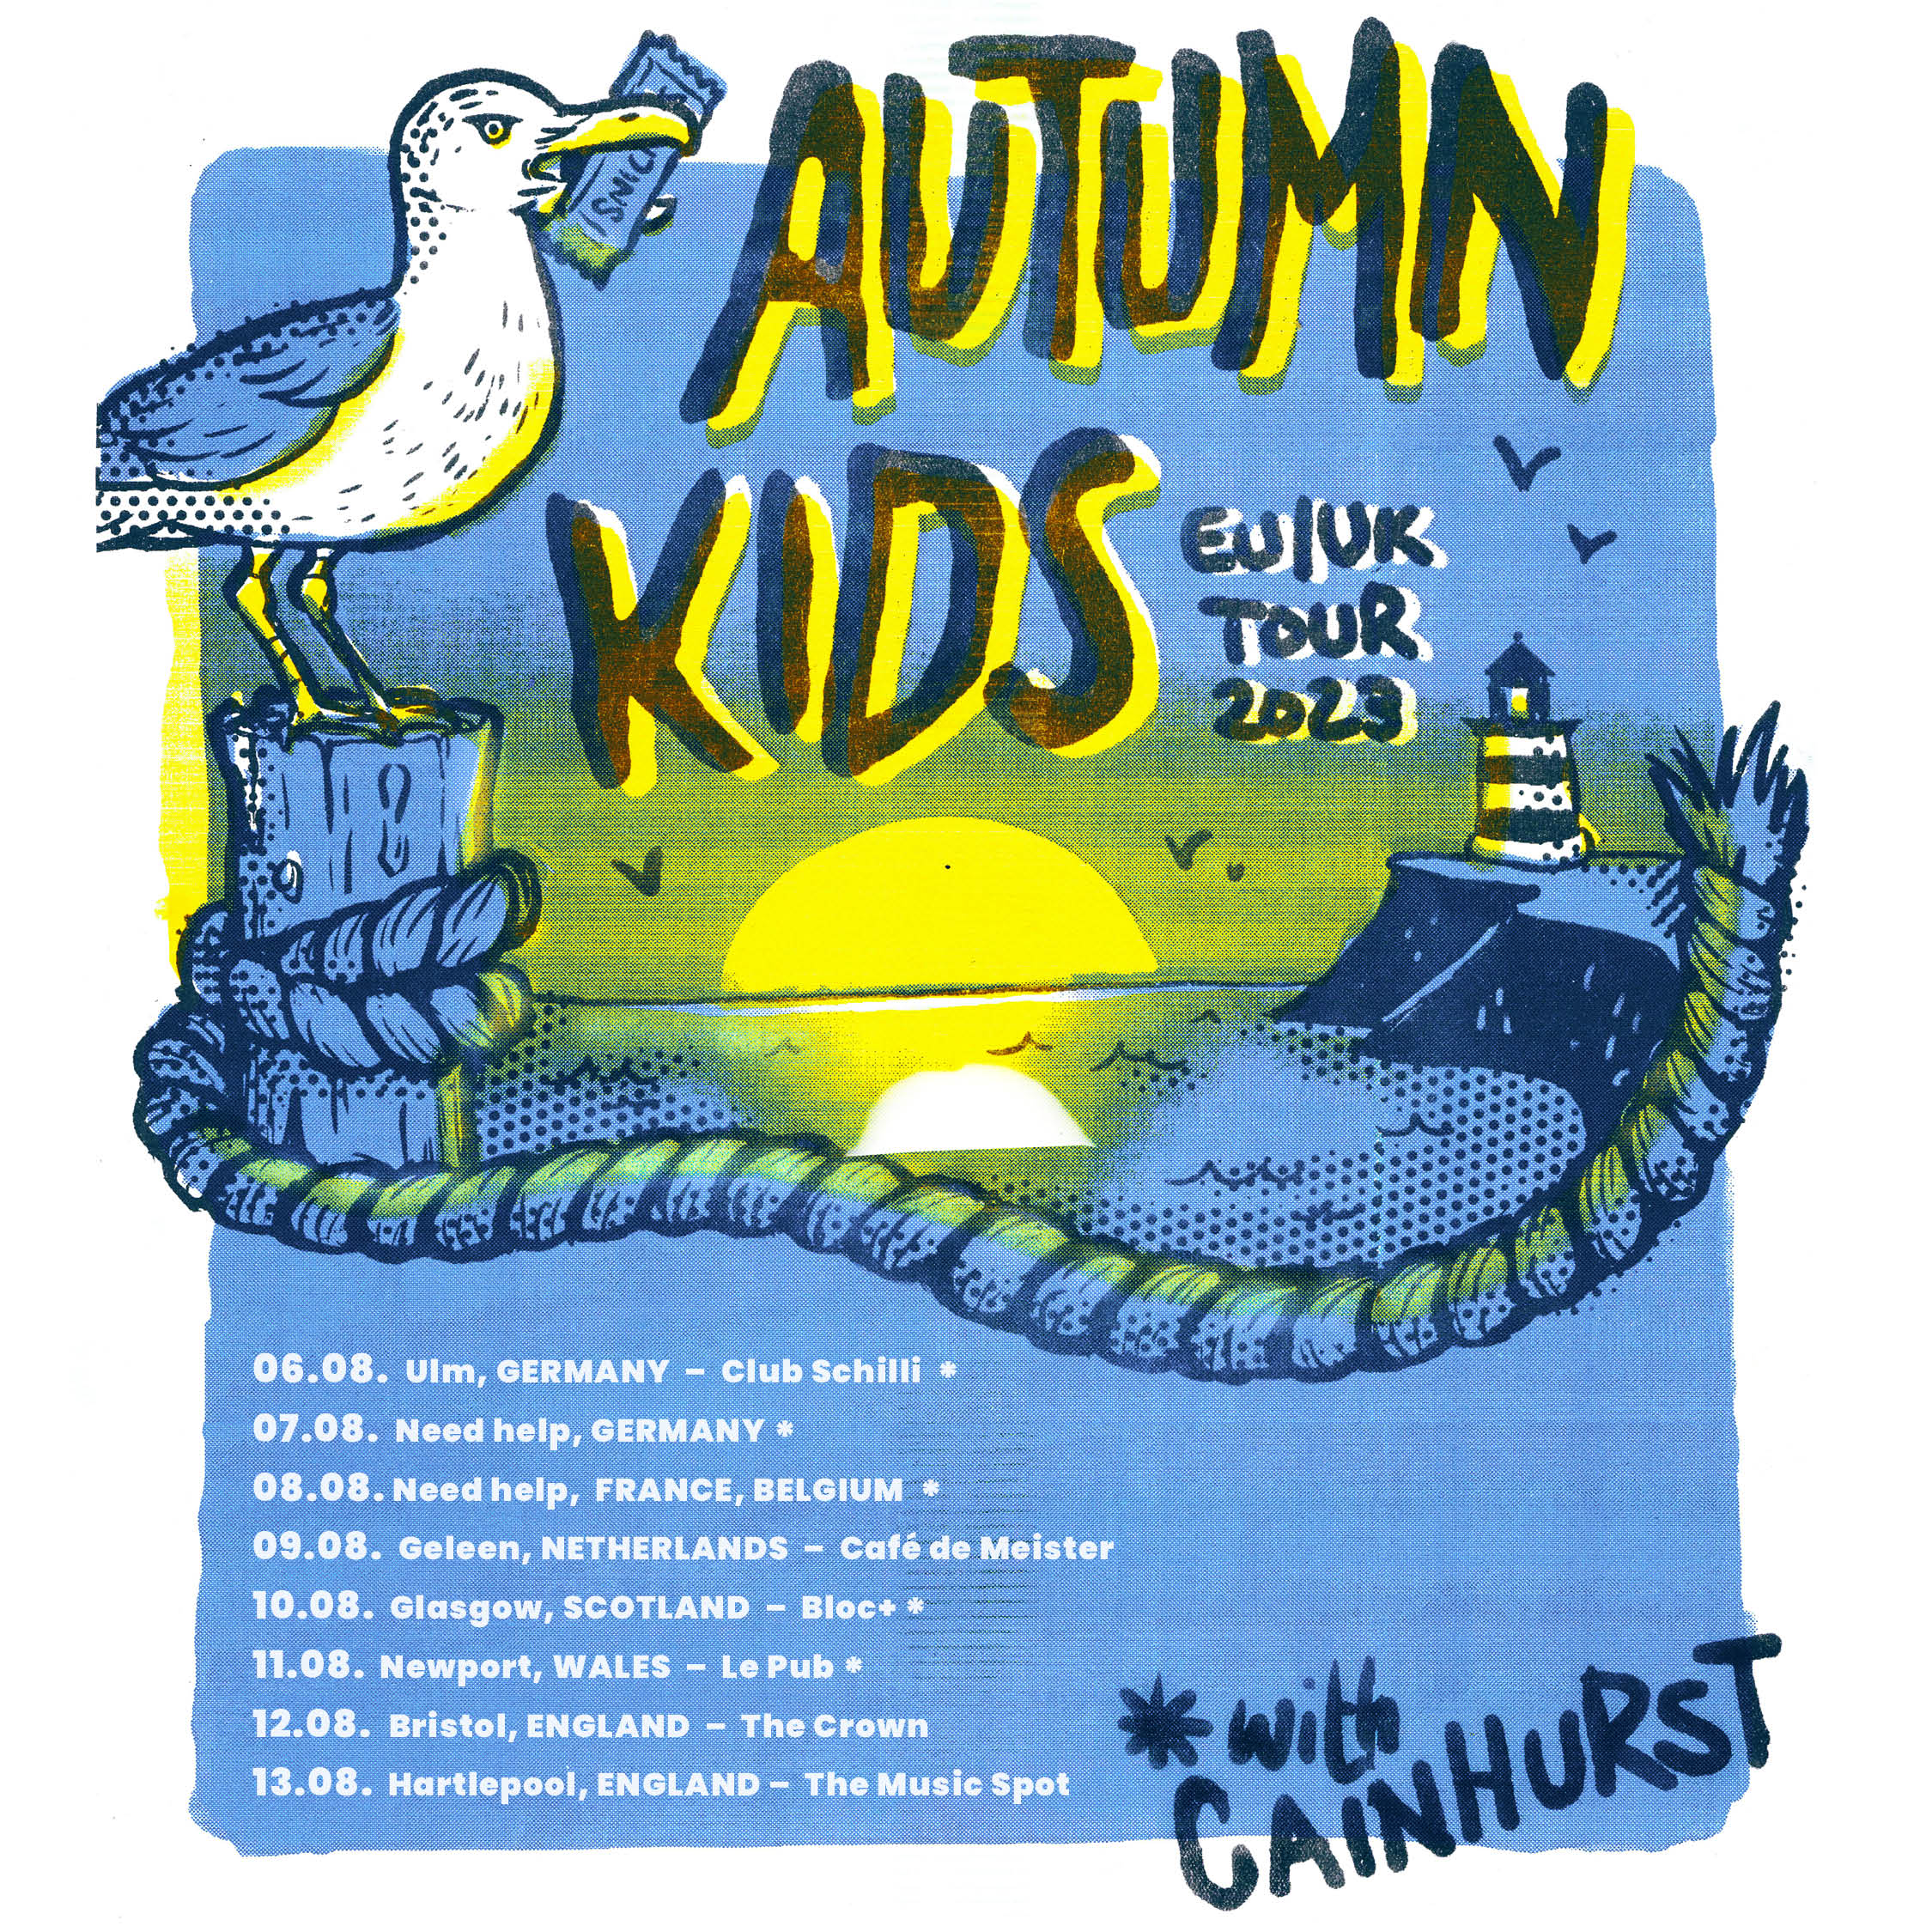 Autumn Kids, Cainhurst (UK) & Legacy of Ashes | Club Schilli, Ulm